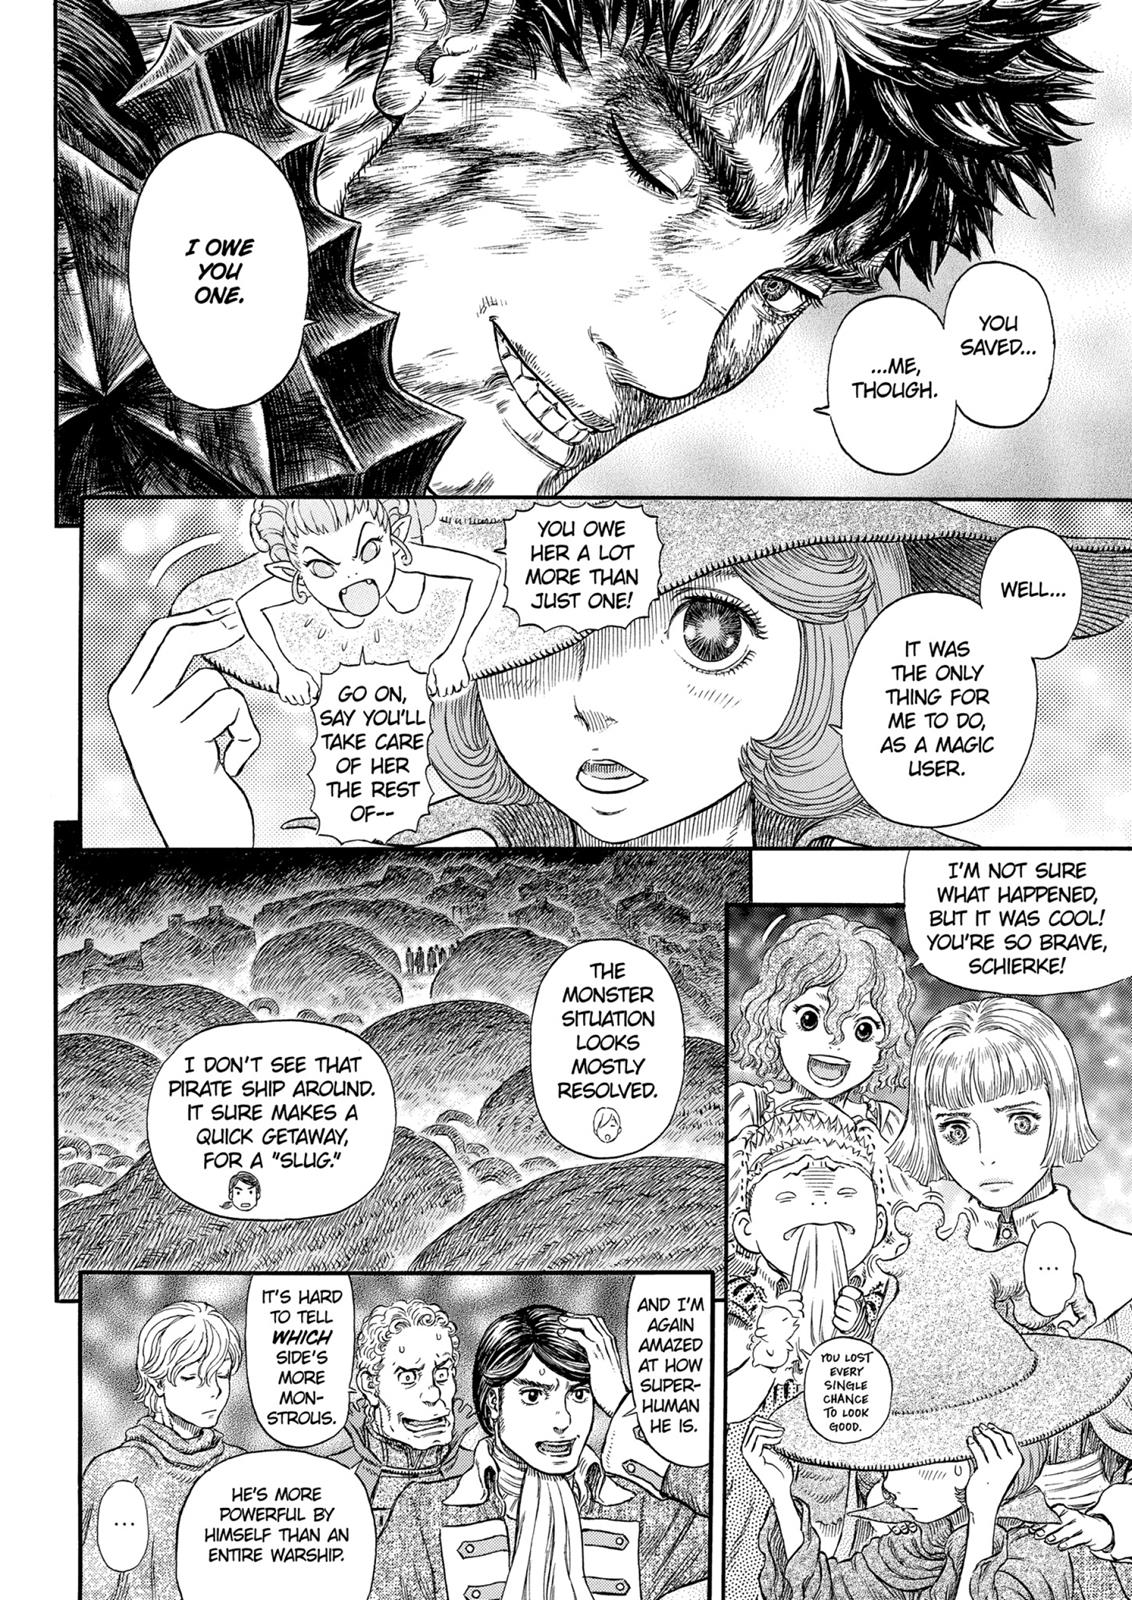 Berserk Manga Chapter 317 image 09